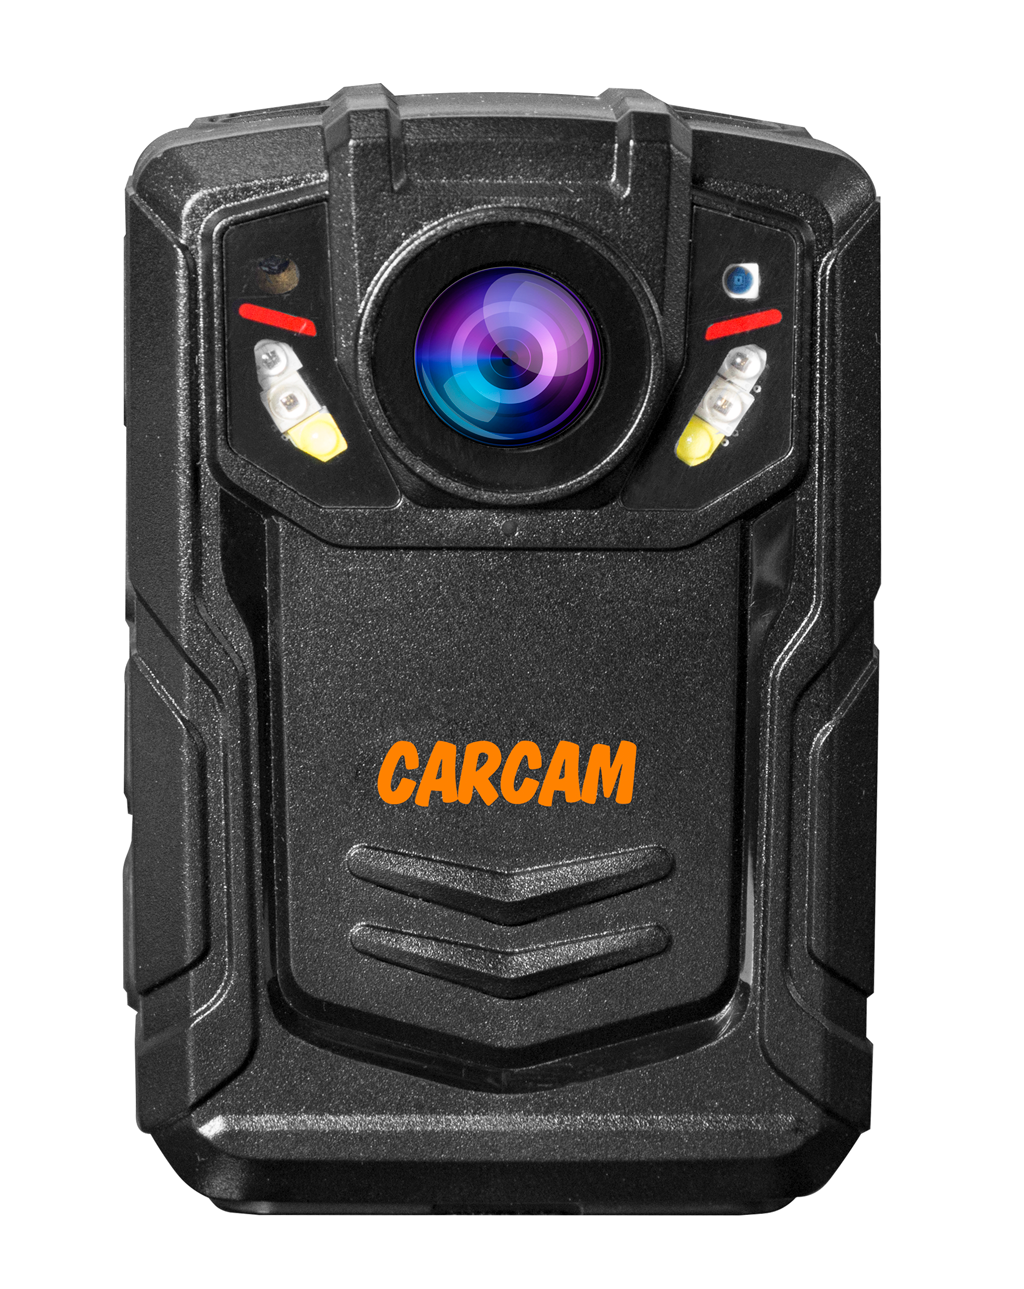 Персональный видеорегистратор CARCAM COMBAT 2S PRO 32GB персональный quad hd видеорегистратор для работников технических объектов carcam combat 2s prof 64gb